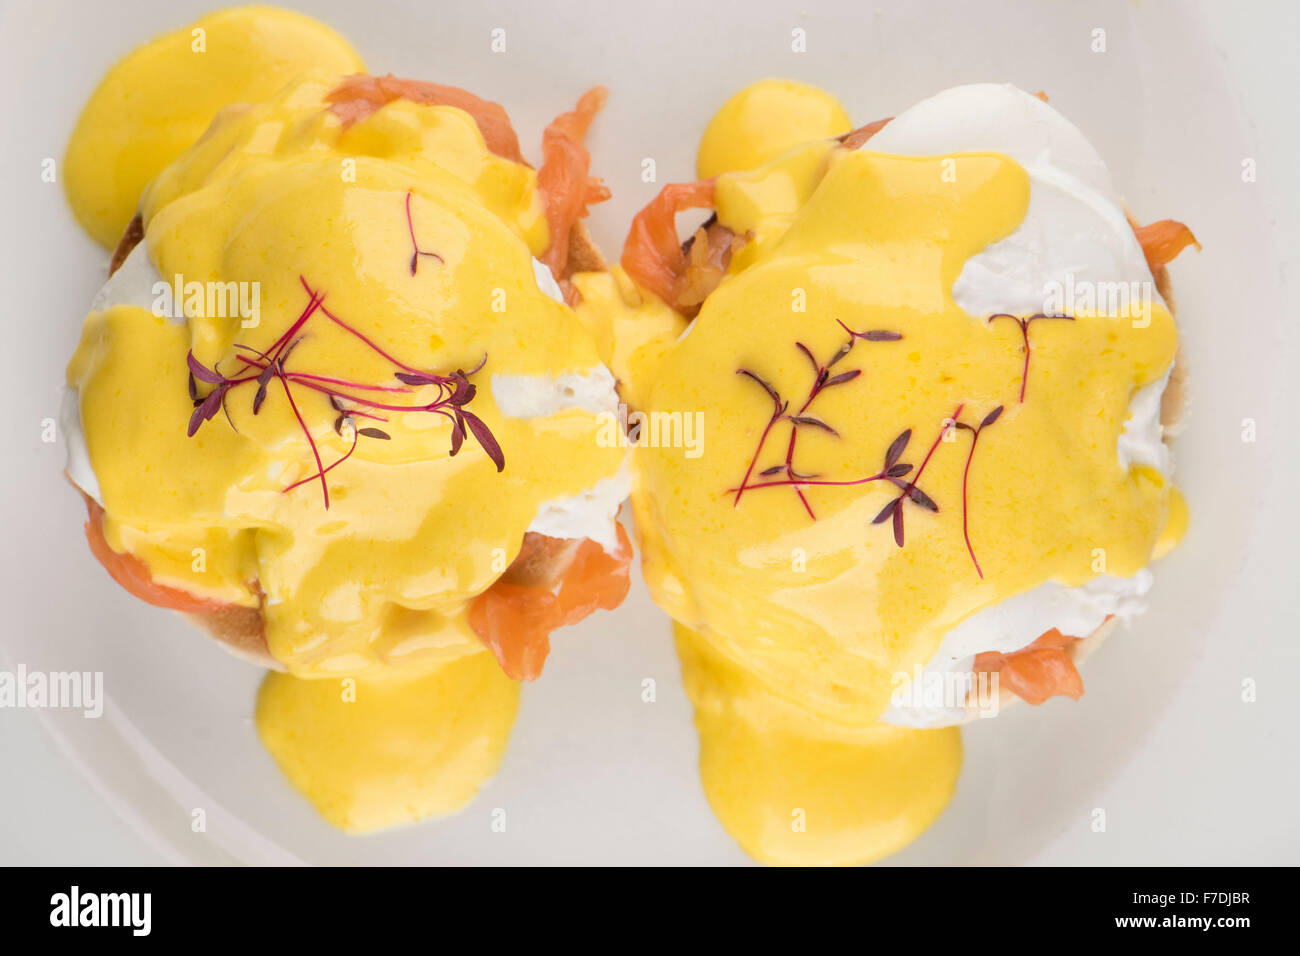 Le petit-déjeuner composé d'œufs Royale un muffin anglais, saumon fumé et d'oeufs à la sauce hollandaise servi sur une plaque blanche Banque D'Images